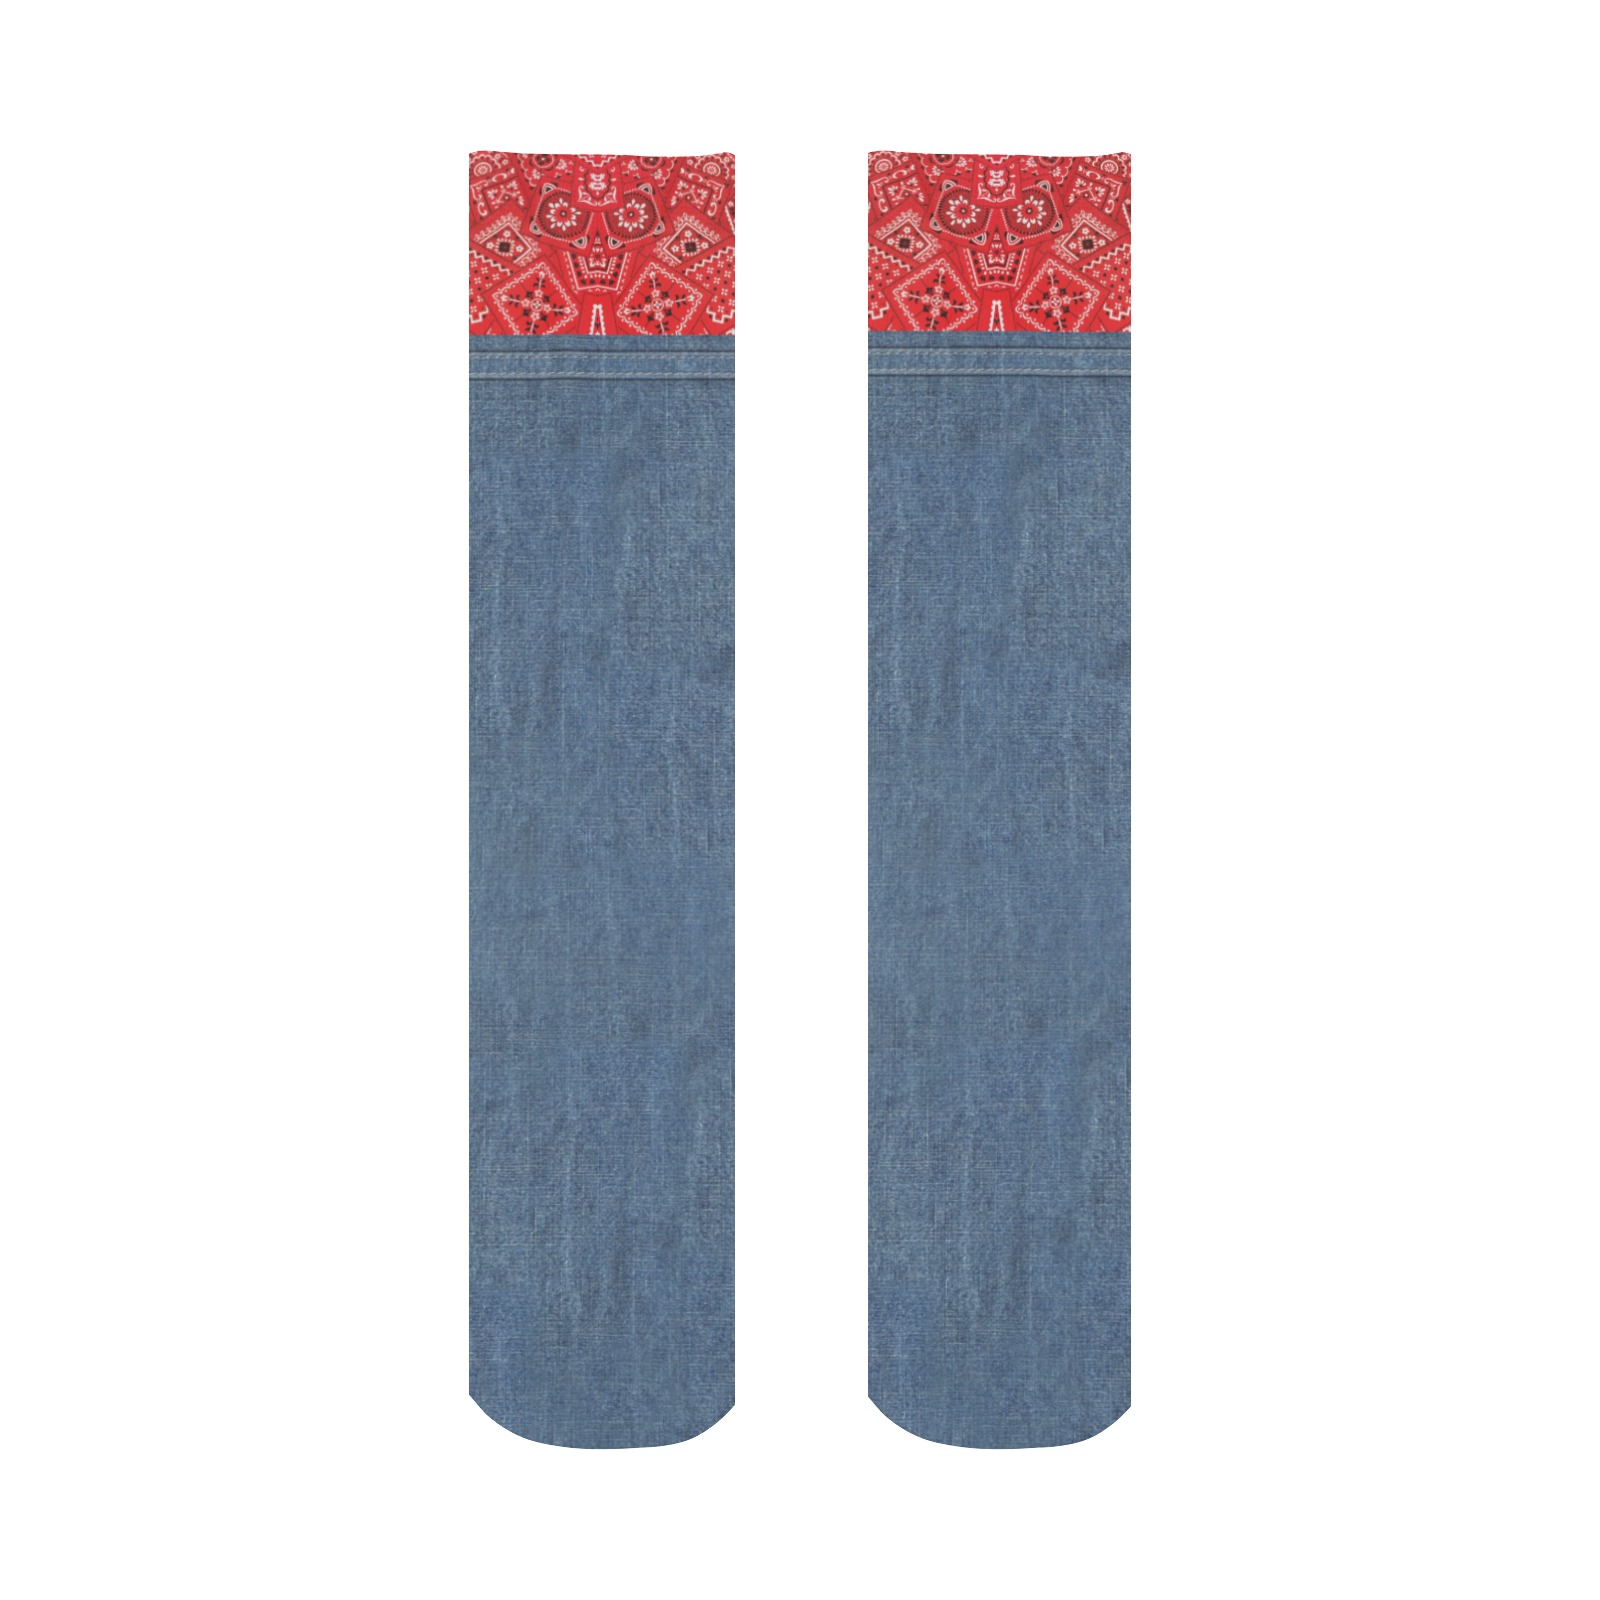 Bandana and Denim-Look All Over Print Socks for Men